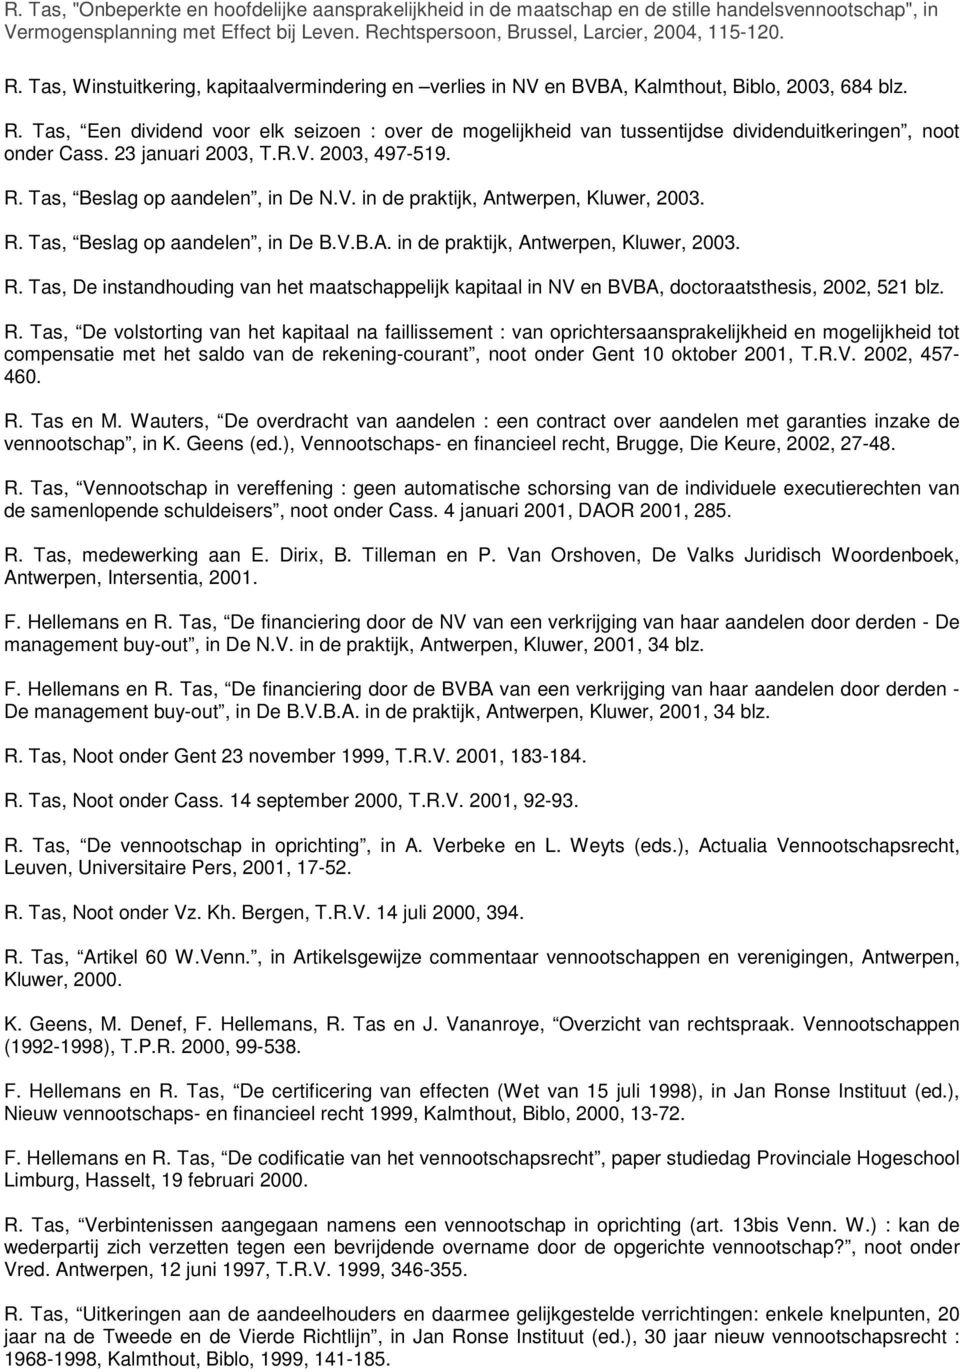 23 januari 2003, T.R.V. 2003, 497-519. R. Tas, Beslag op aandelen, in De N.V. in de praktijk, Antwerpen, Kluwer, 2003. R. Tas, Beslag op aandelen, in De B.V.B.A. in de praktijk, Antwerpen, Kluwer, 2003. R. Tas, De instandhouding van het maatschappelijk kapitaal in NV en BVBA, doctoraatsthesis, 2002, 521 blz.